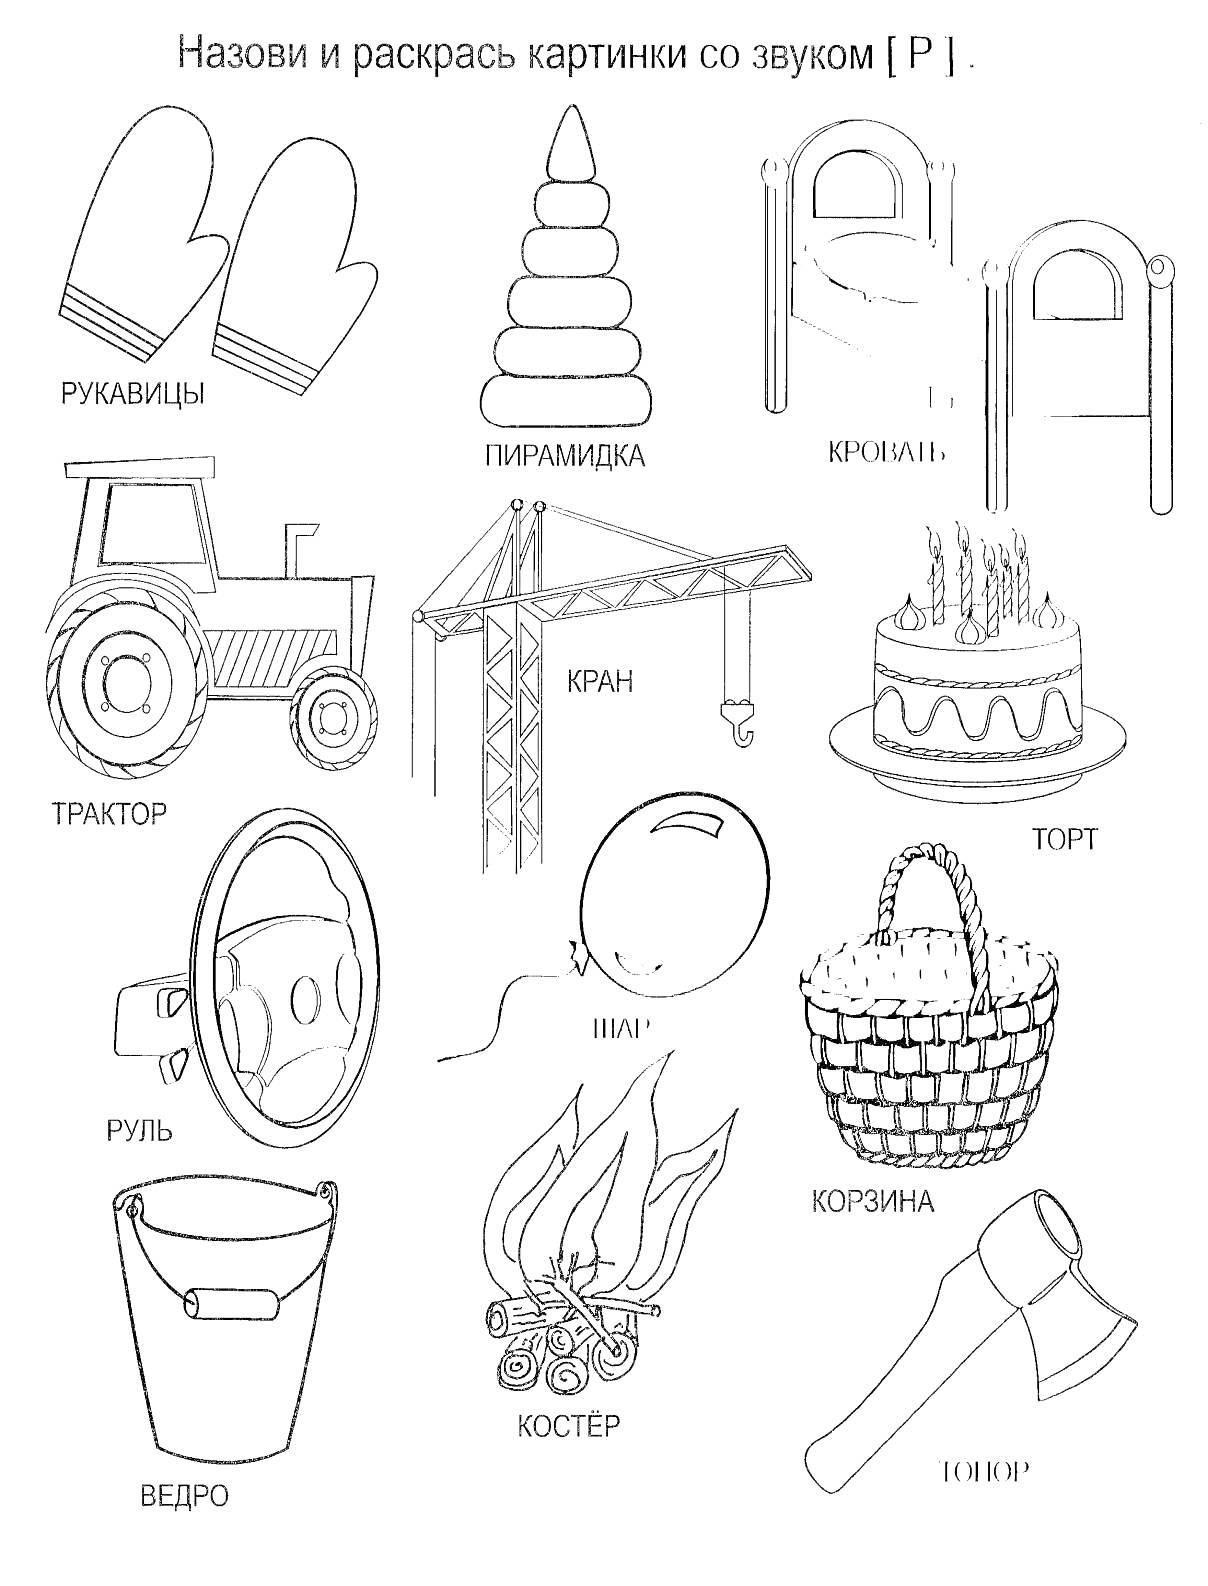 Раскраска Логопедическая раскраска со словами на звук [Р]: рукавицы, пирамидка, кровать, трактор, кран, торт, руль, шар, корзина, ведро, костёр, топор.